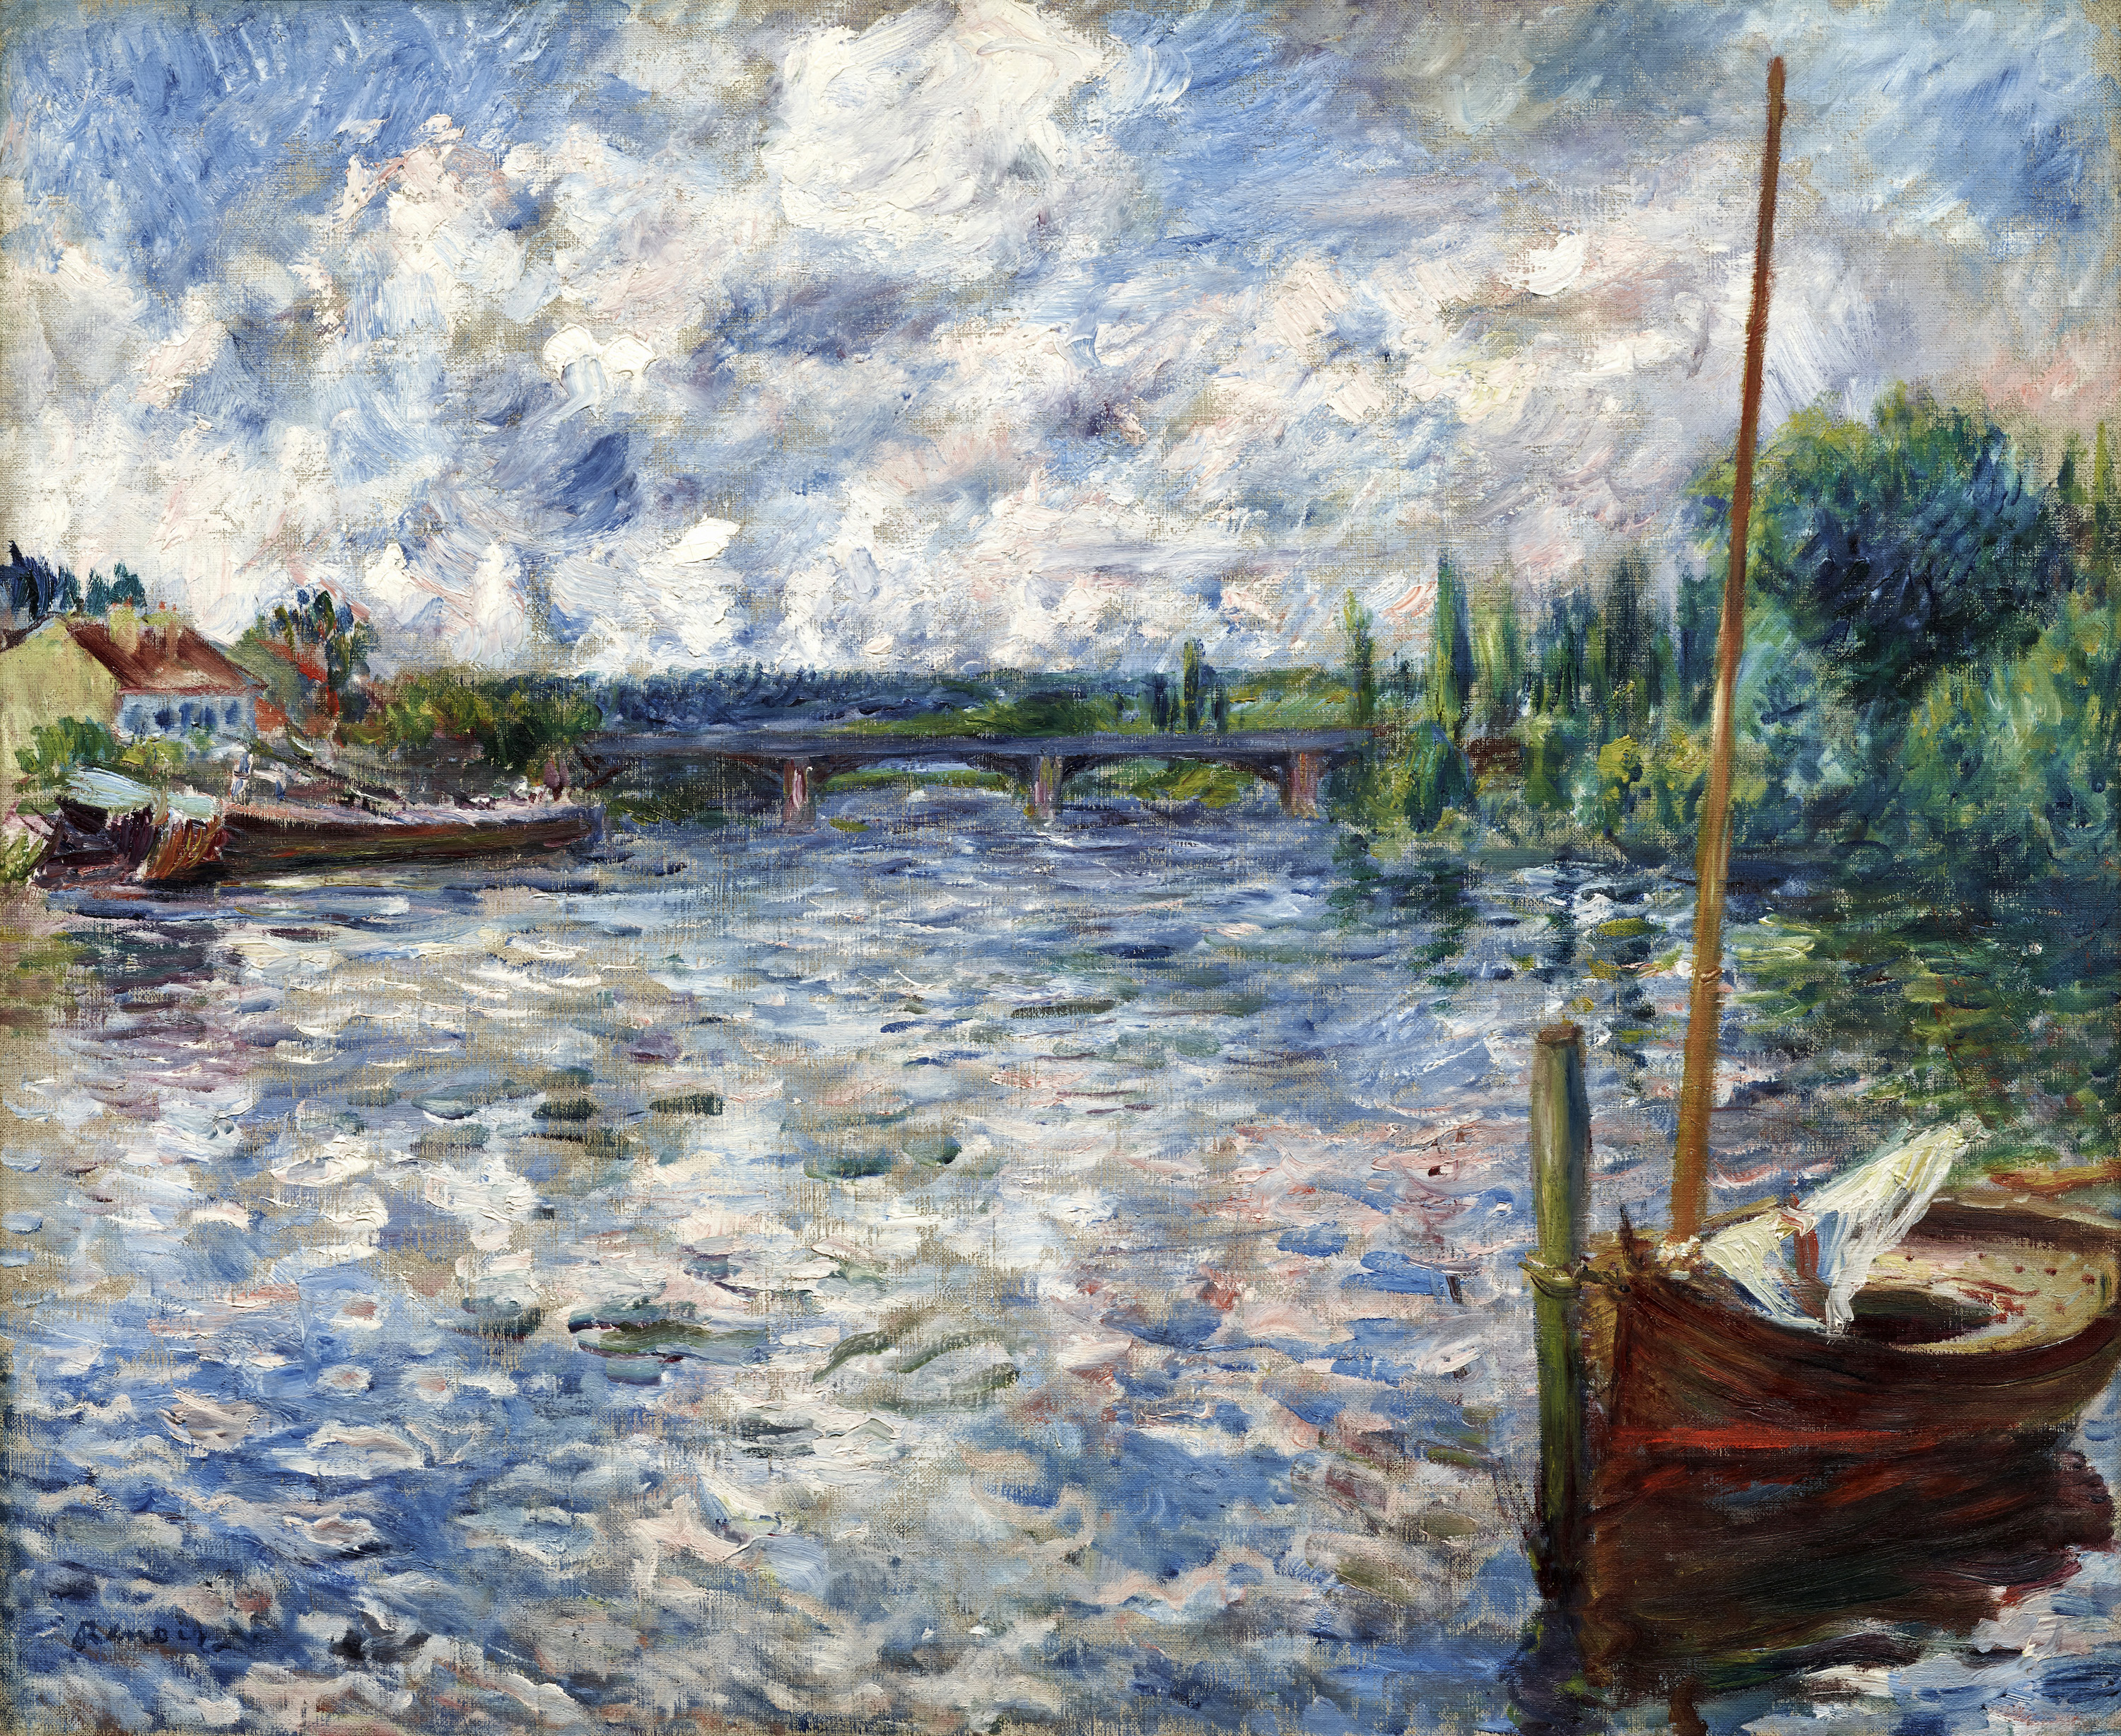 샤투의 센강(The Seine at Chatou) by Pierre-Auguste Renoir - 1874 - 50.8 x 63.5 cm 